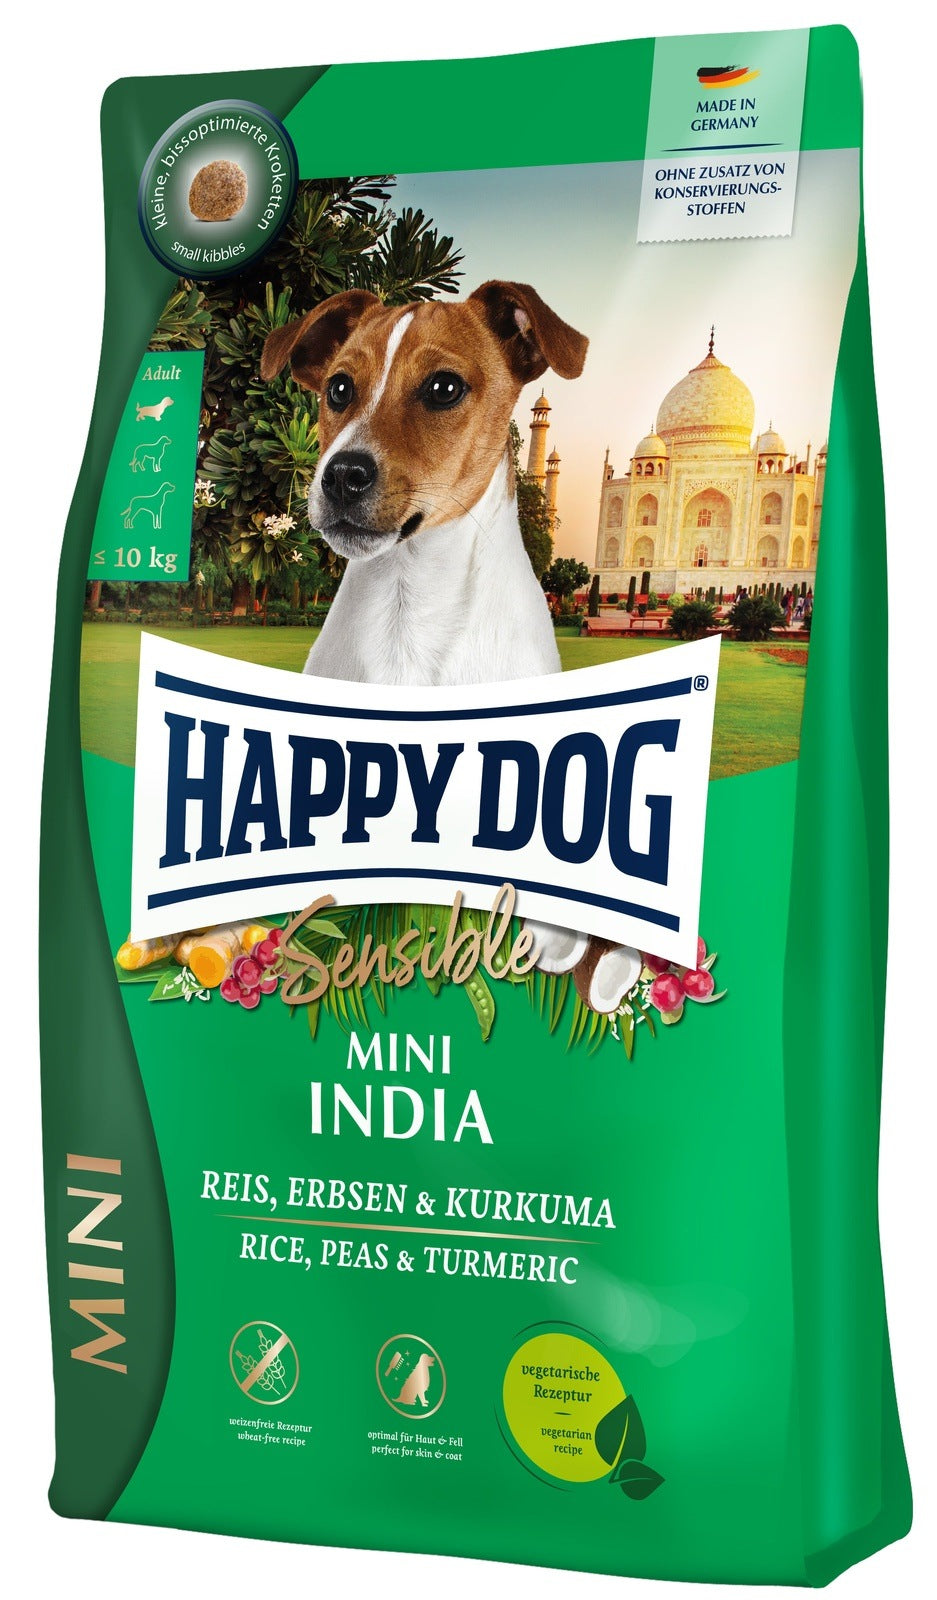 Artikel mit dem Namen Happy Dog Sensible Mini India im Shop von zoo.de , dem Onlineshop für nachhaltiges Hundefutter und Katzenfutter.